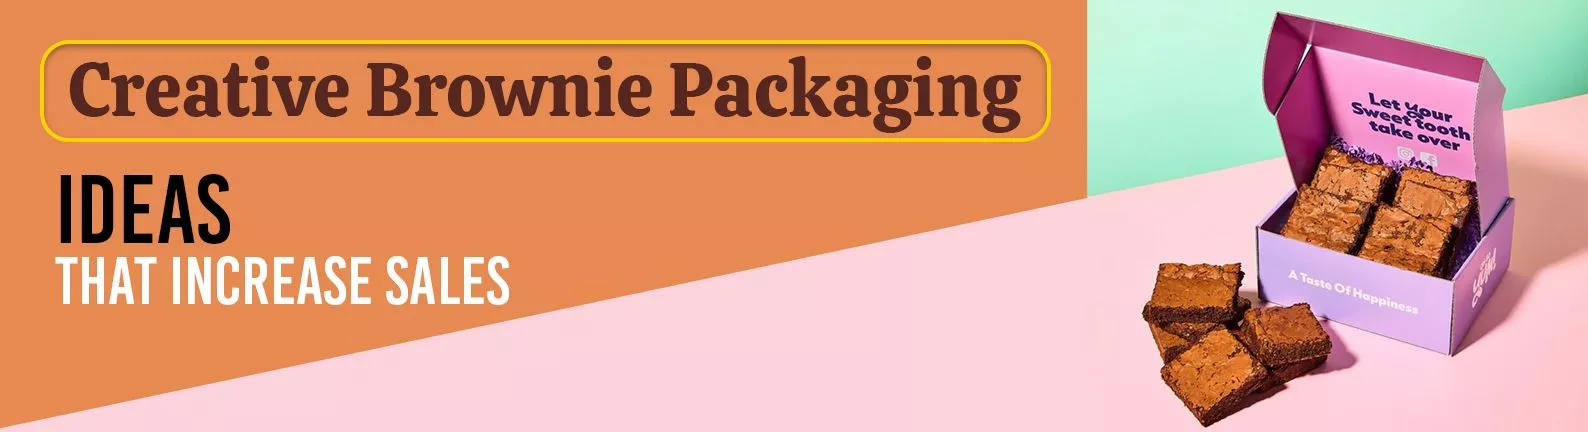 Creative Brownie Packaging Ideas That Increase Sales